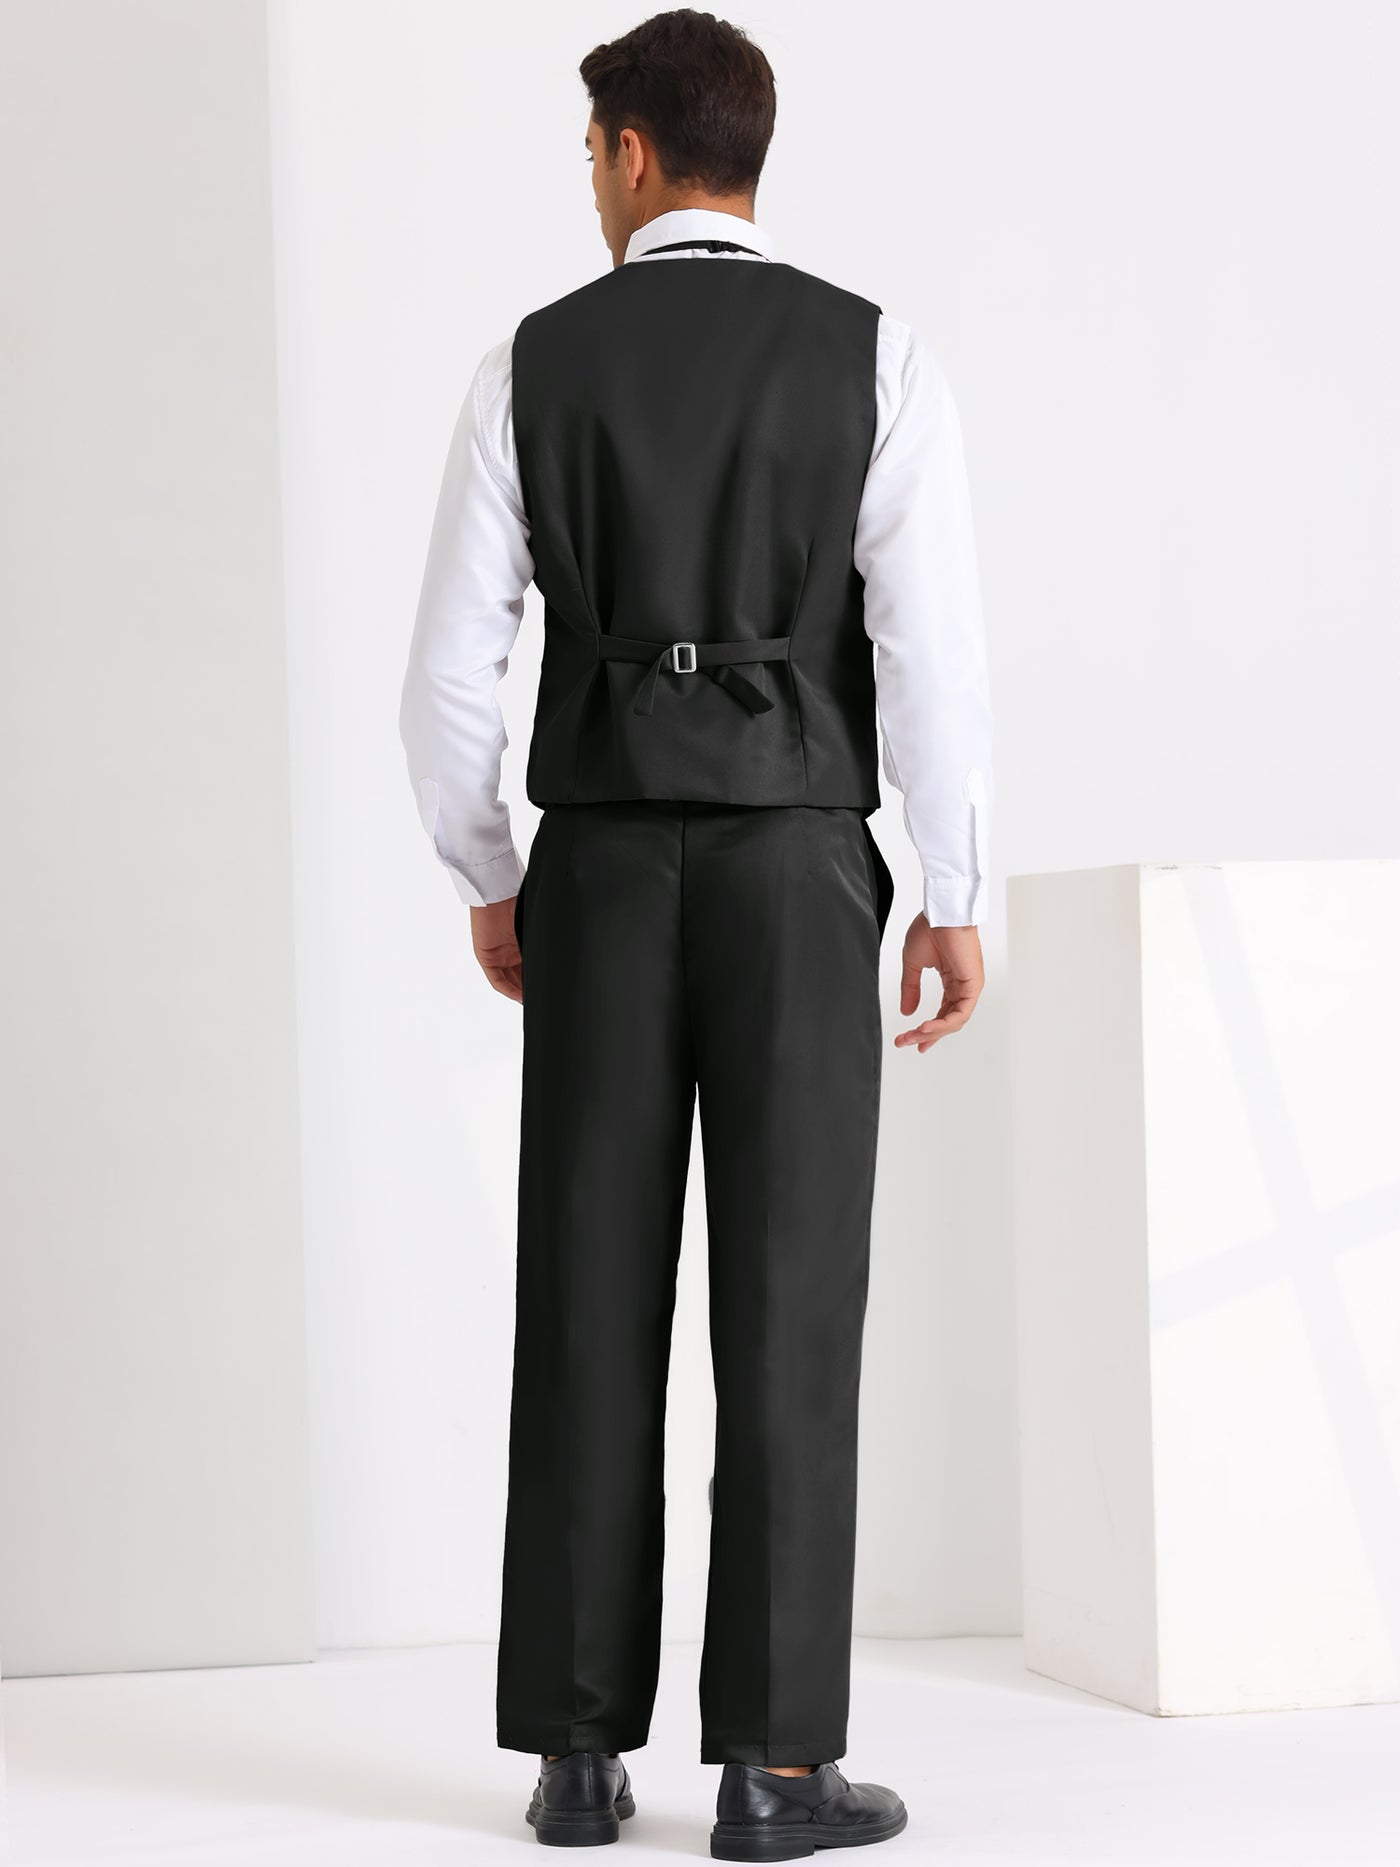 Bublédon 3 Pieces Suits for Men's Prom Wedding Business Dress Shirt Pants Waistcoat Sets